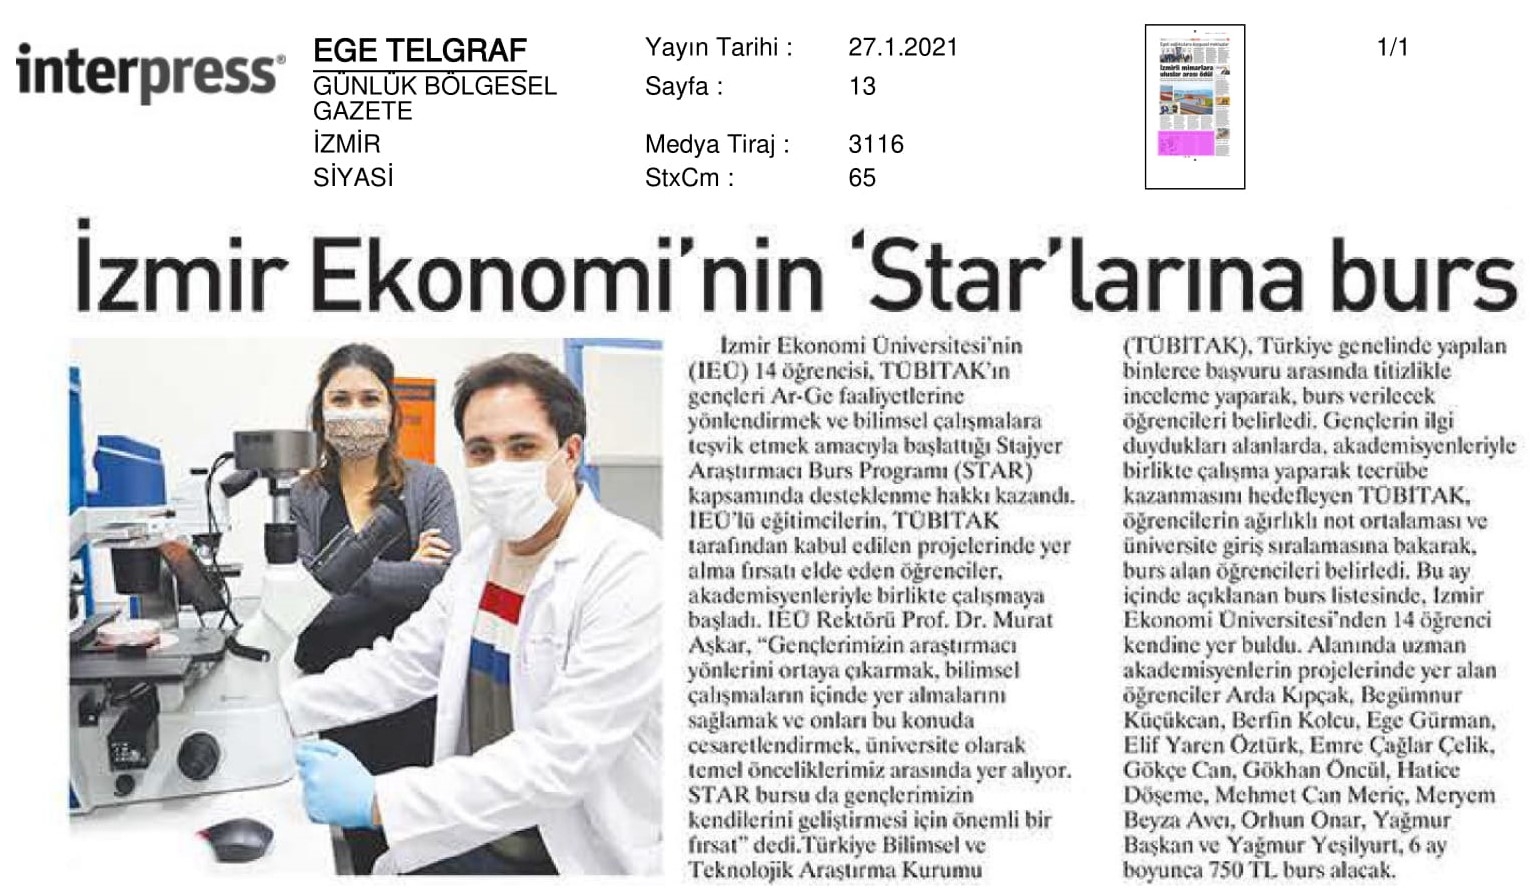 İzmir Ekonomi’nin ‘Star’ları